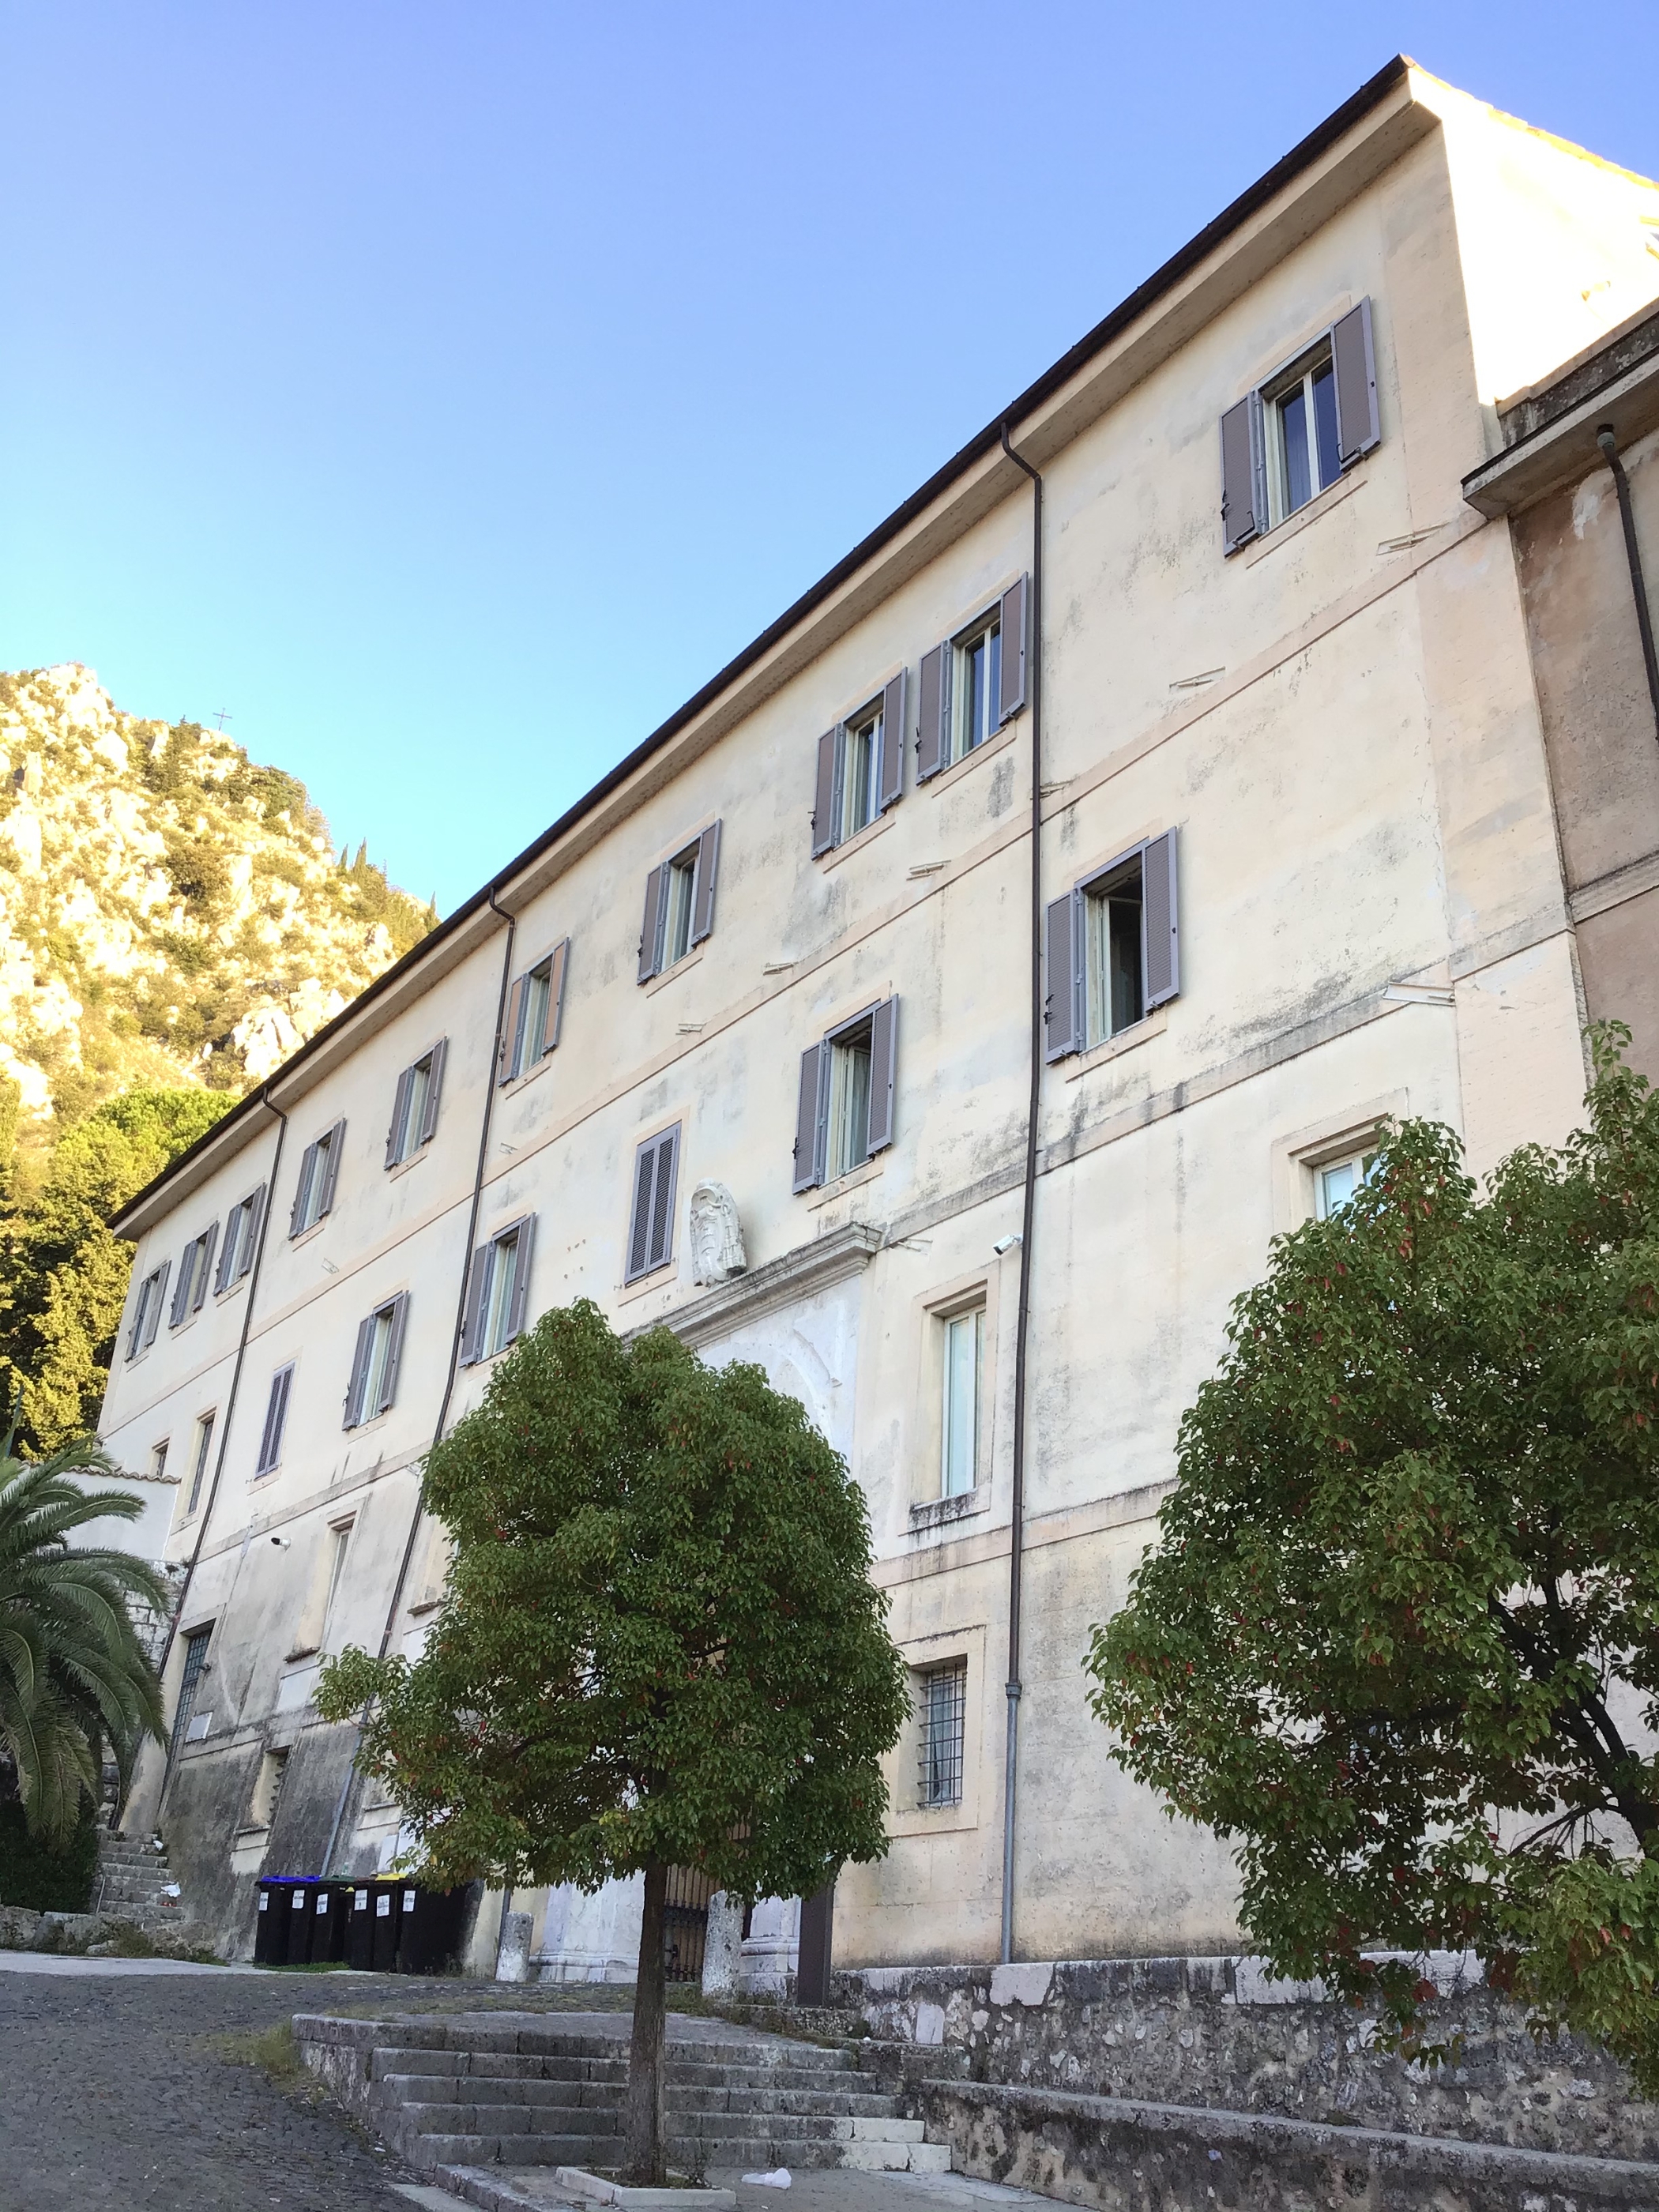 Palazzo Vescovile (palazzo, vescovile) - Sora (FR) 